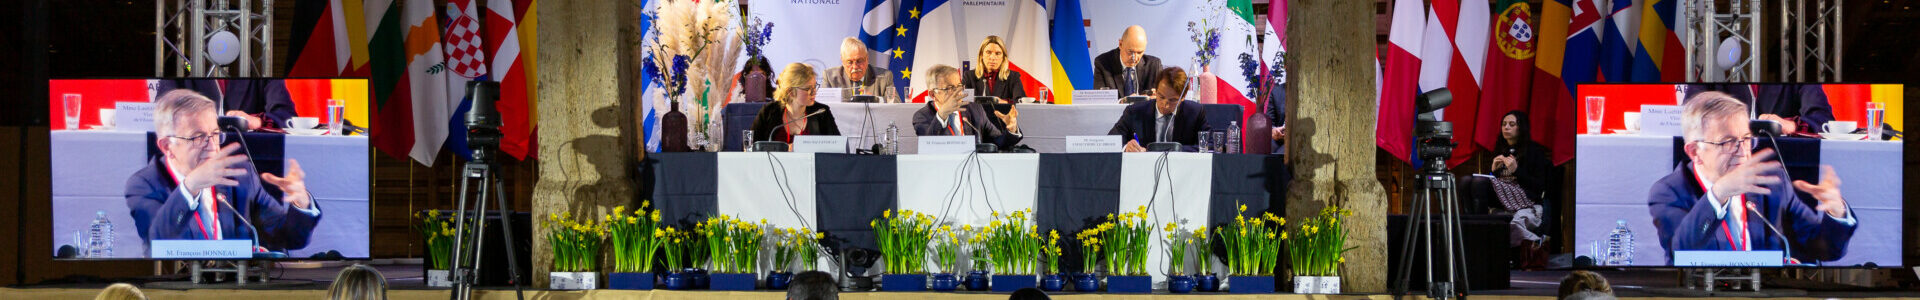 Conférence des présidents de commissions de l'UE